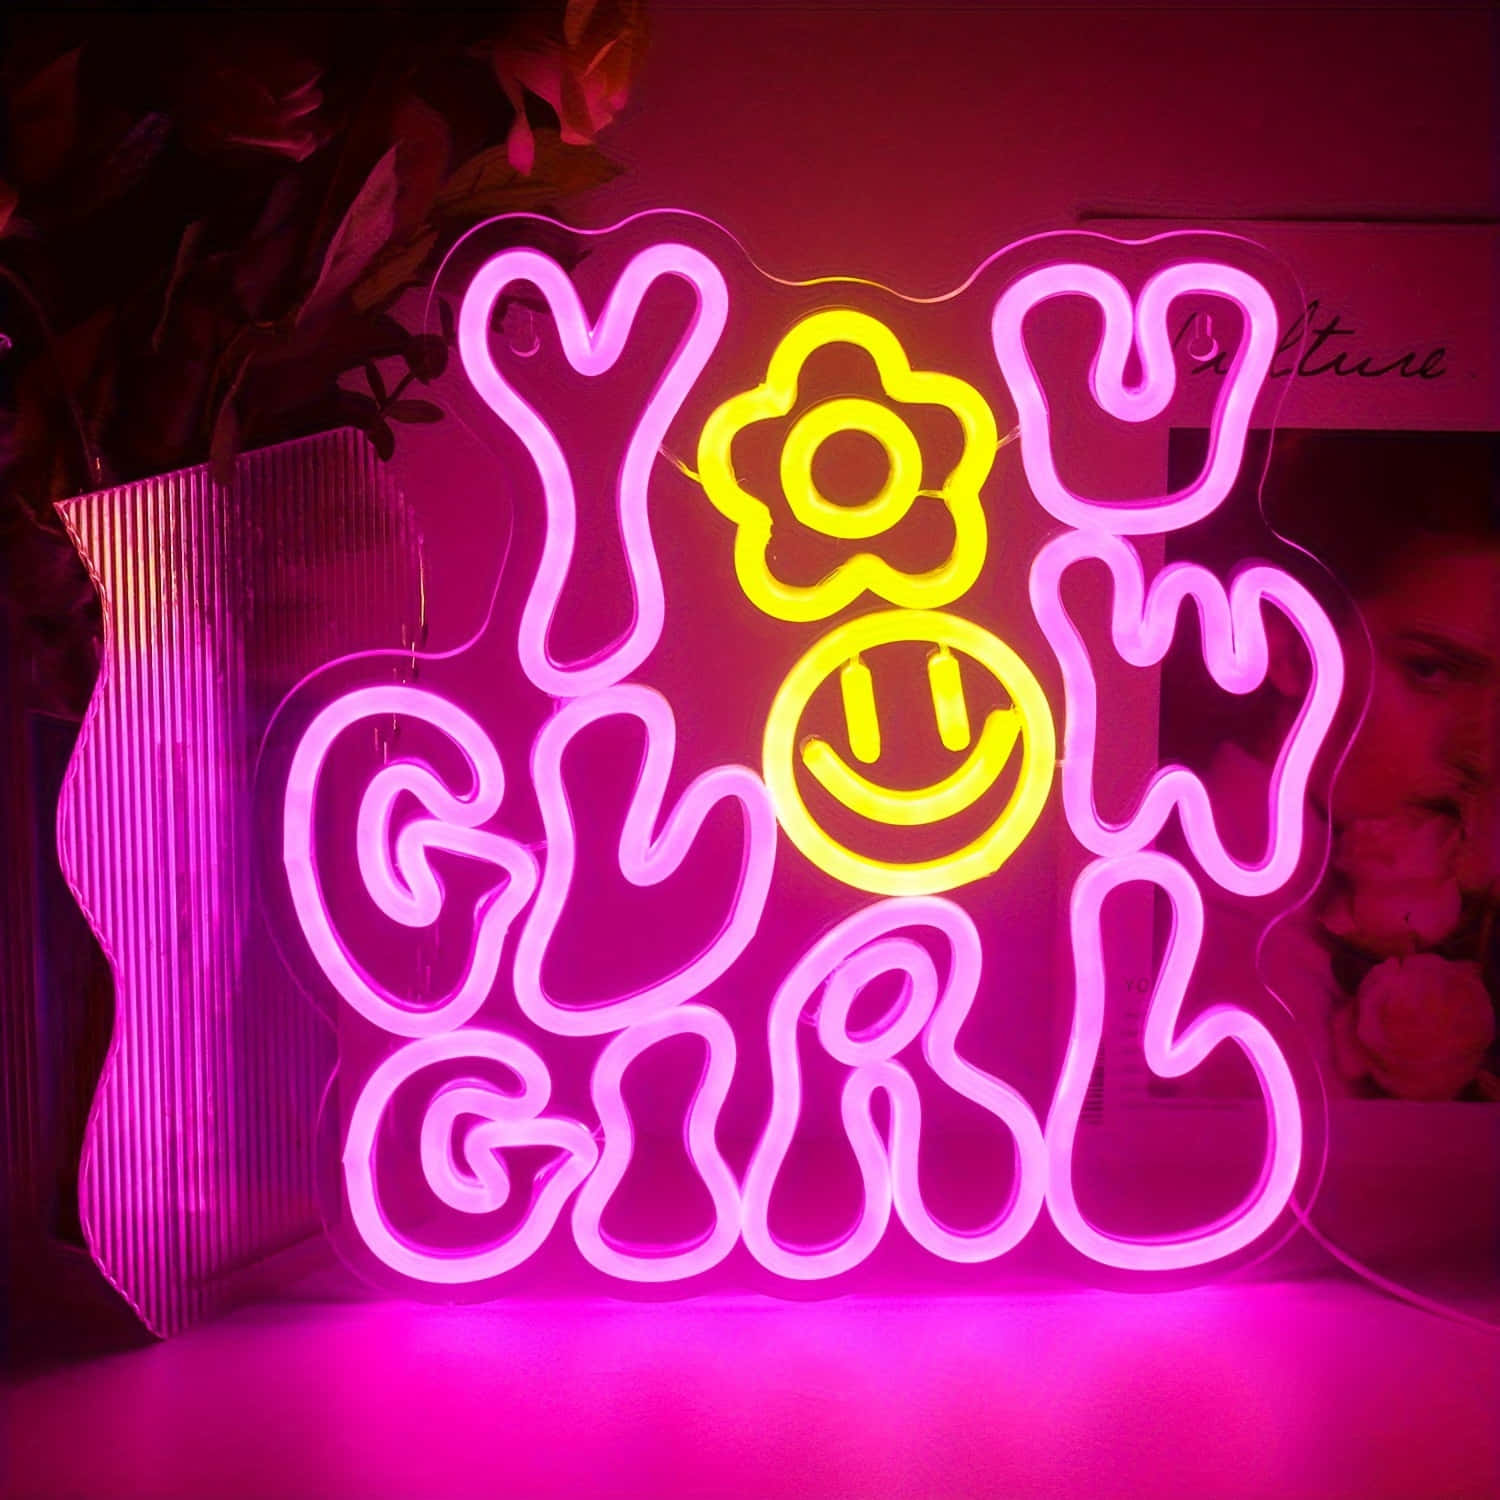 Glowing Neon Pink Y O U G O G I R L Sign Wallpaper